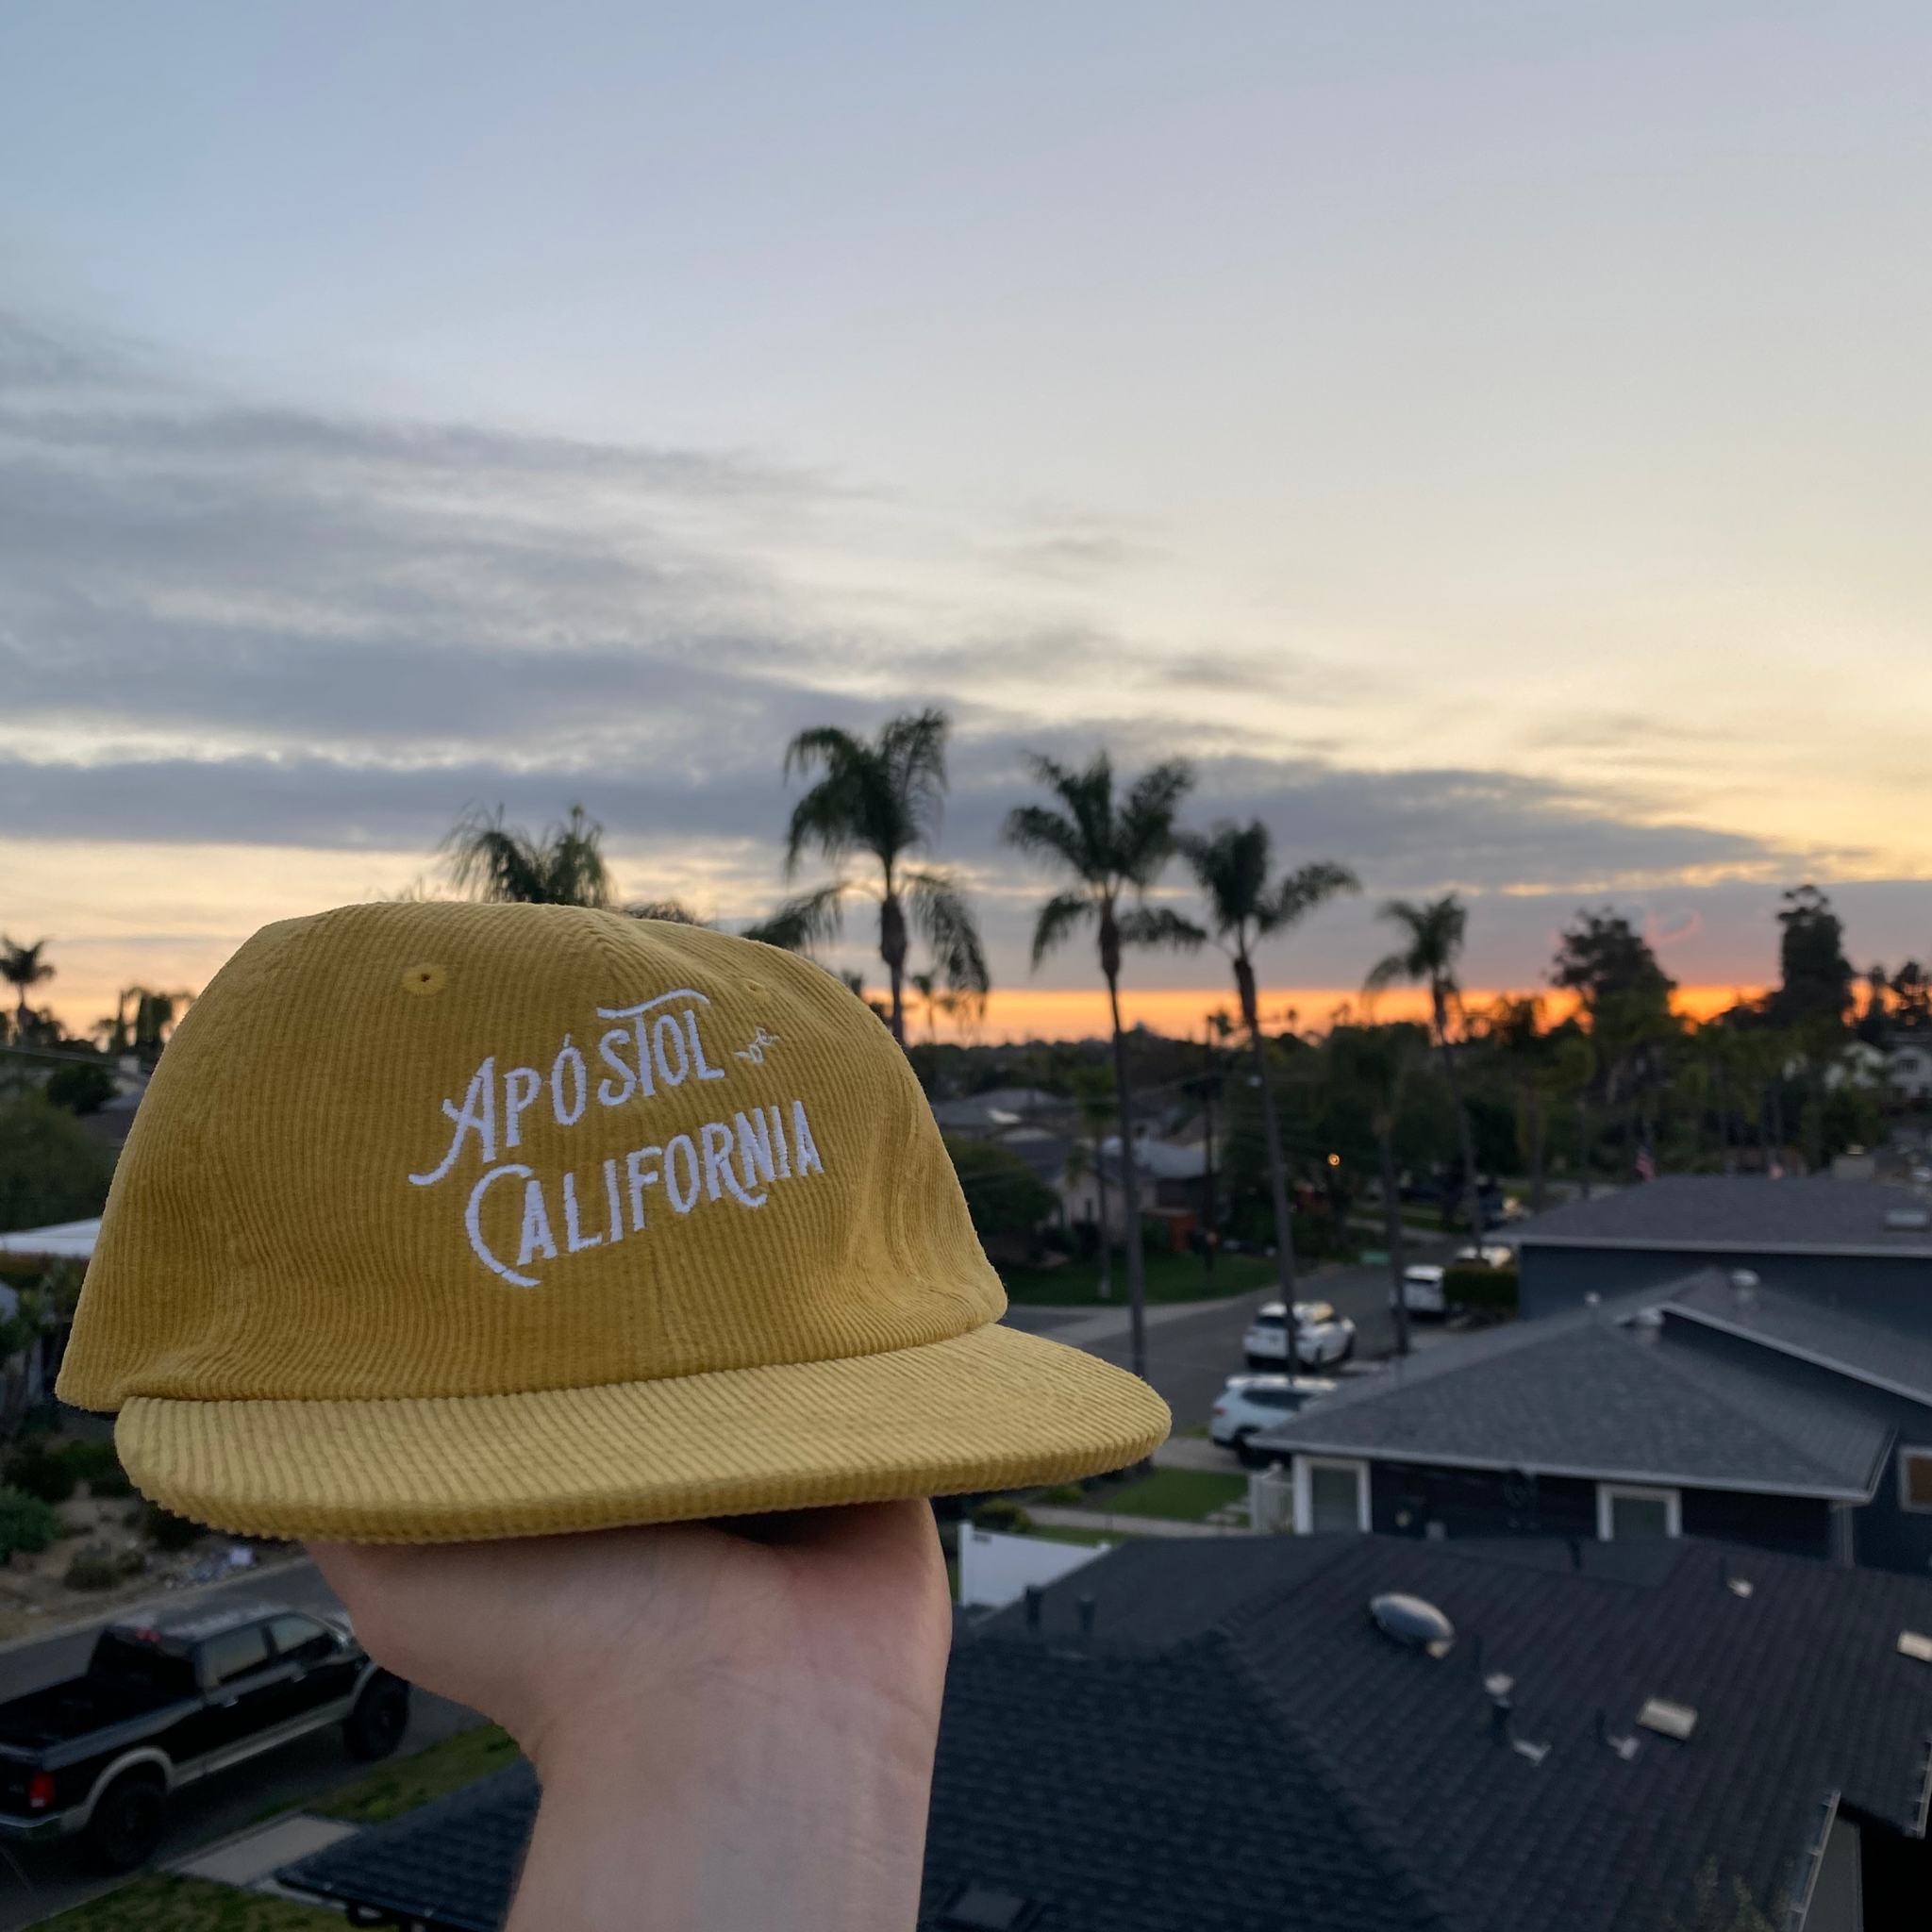 Apostol de California Hat